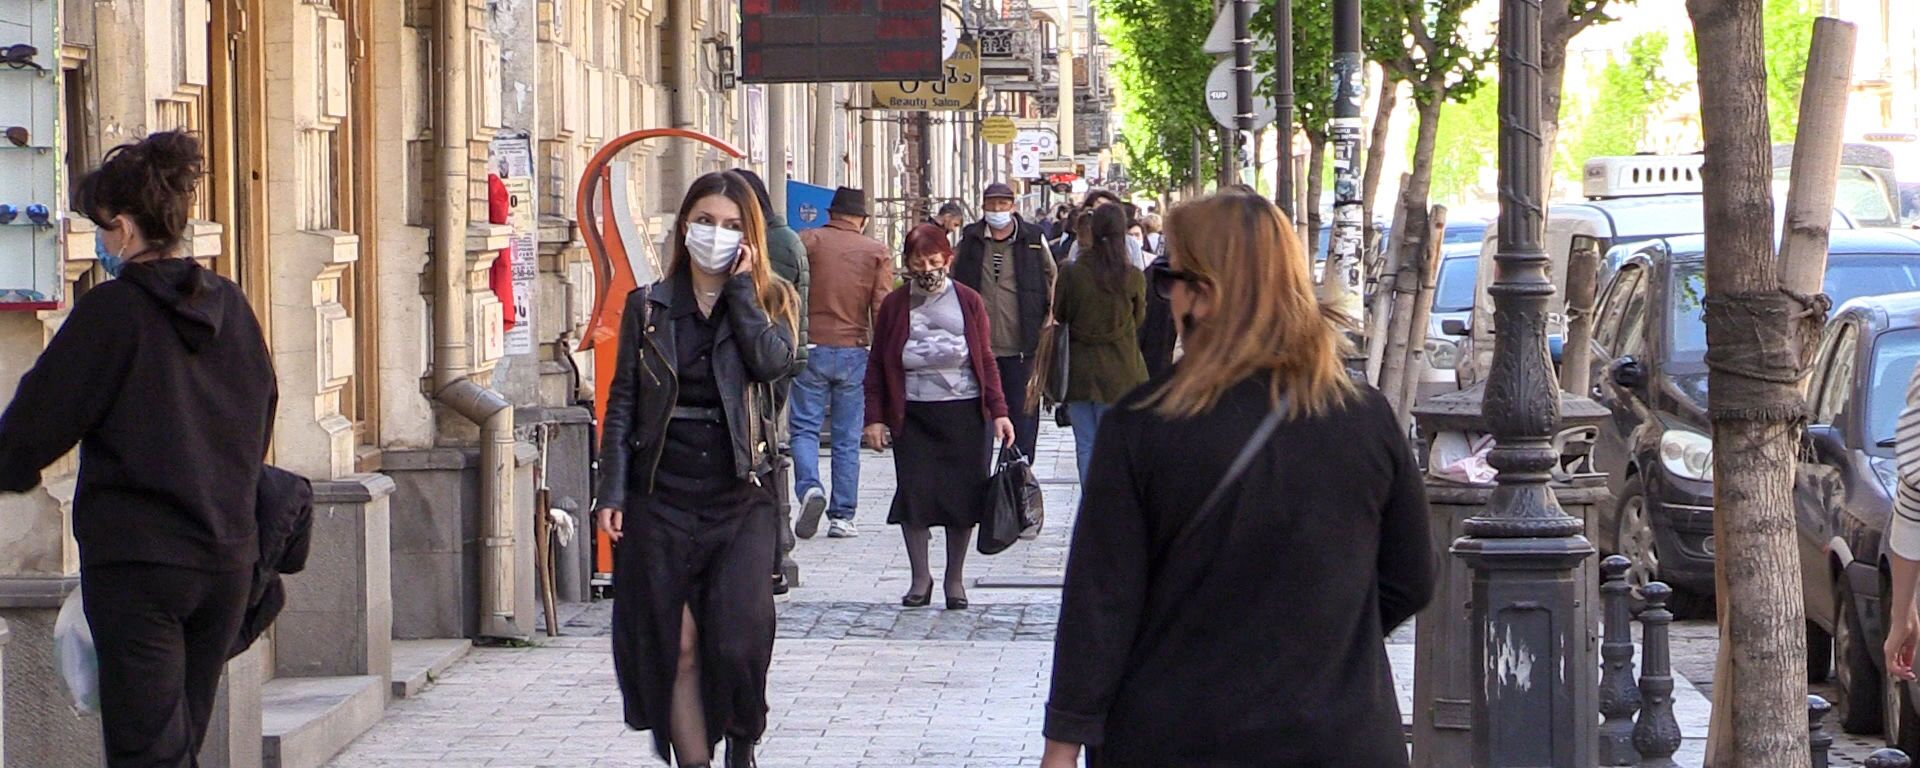 Эпидемия коронавируса - прохожие в масках на улице - Sputnik Грузия, 1920, 09.05.2021